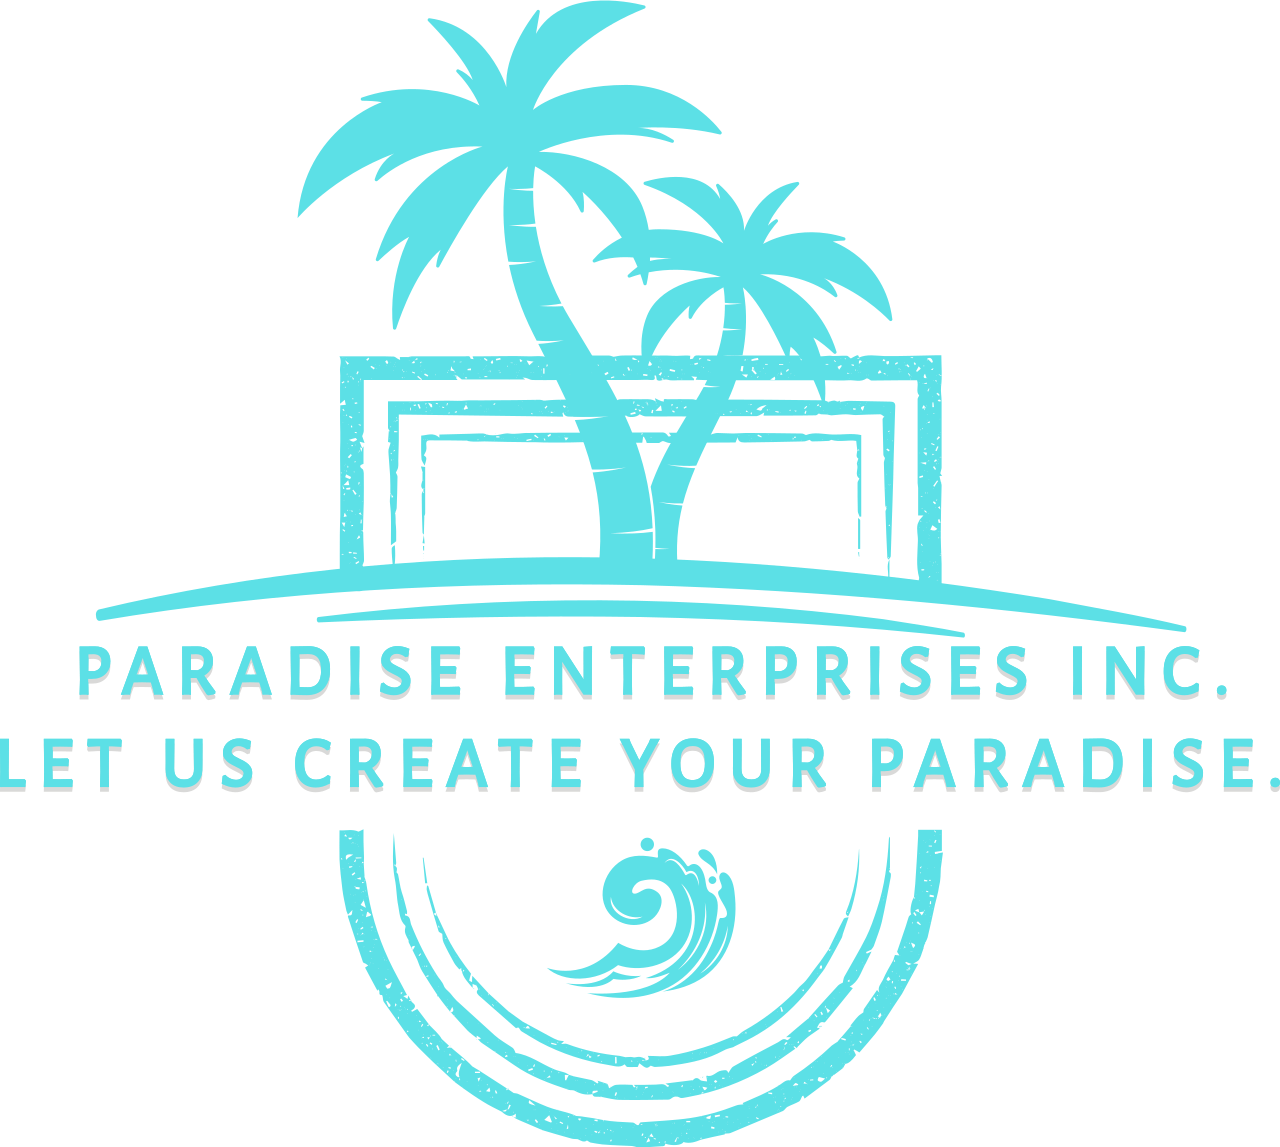 PARADISE ENTERPRISES INC.
Let us create your paradise. 's logo